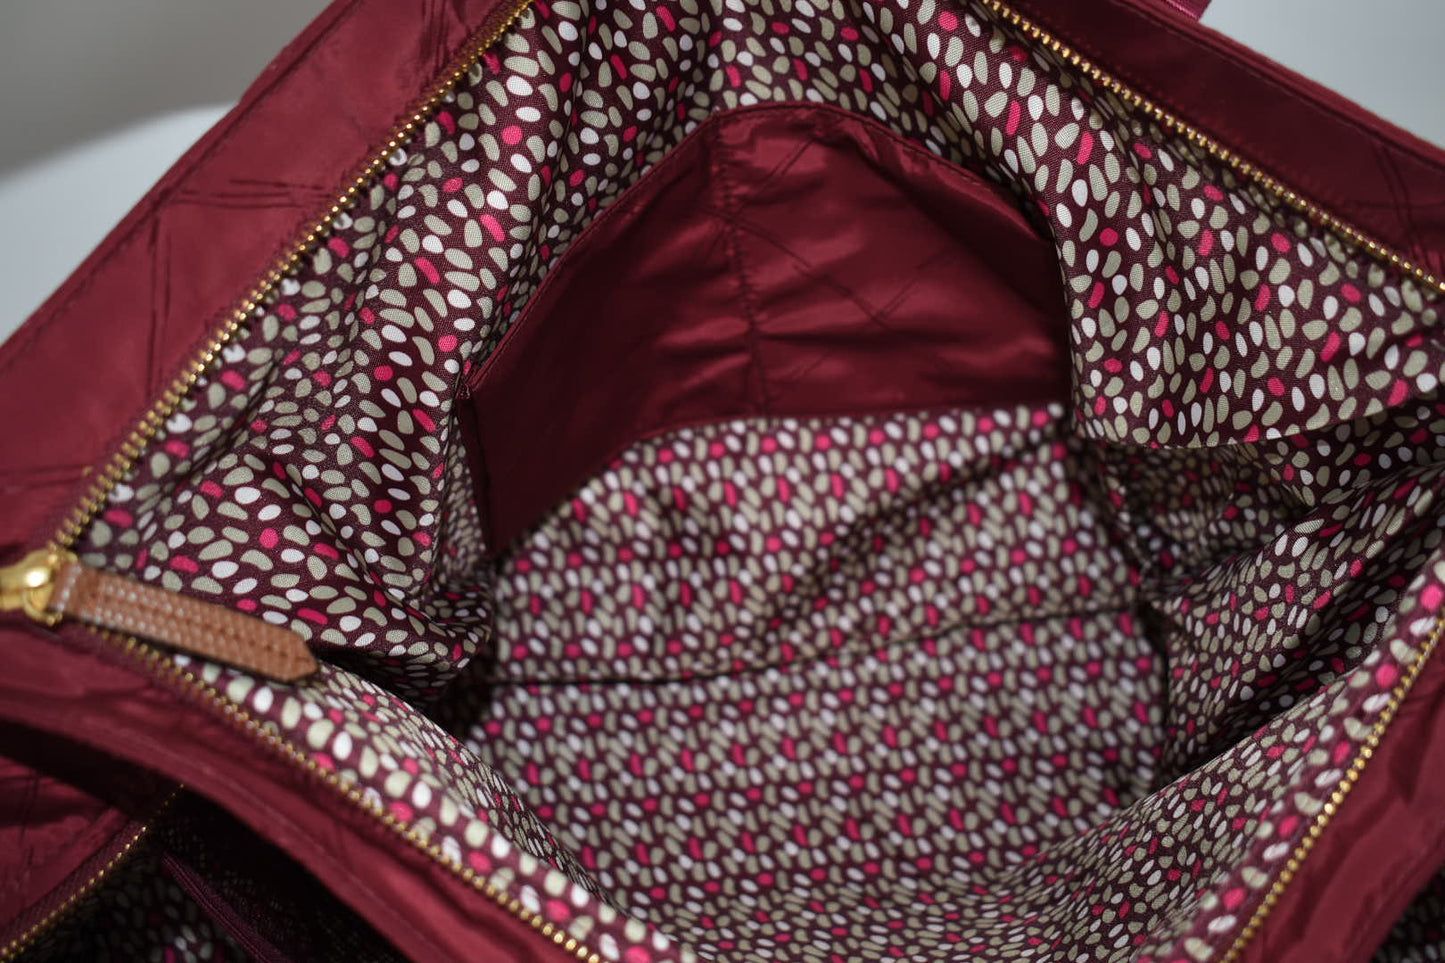 Vera Bradley Preppy Poly Triple Travel Bag in "Claret" Pattern